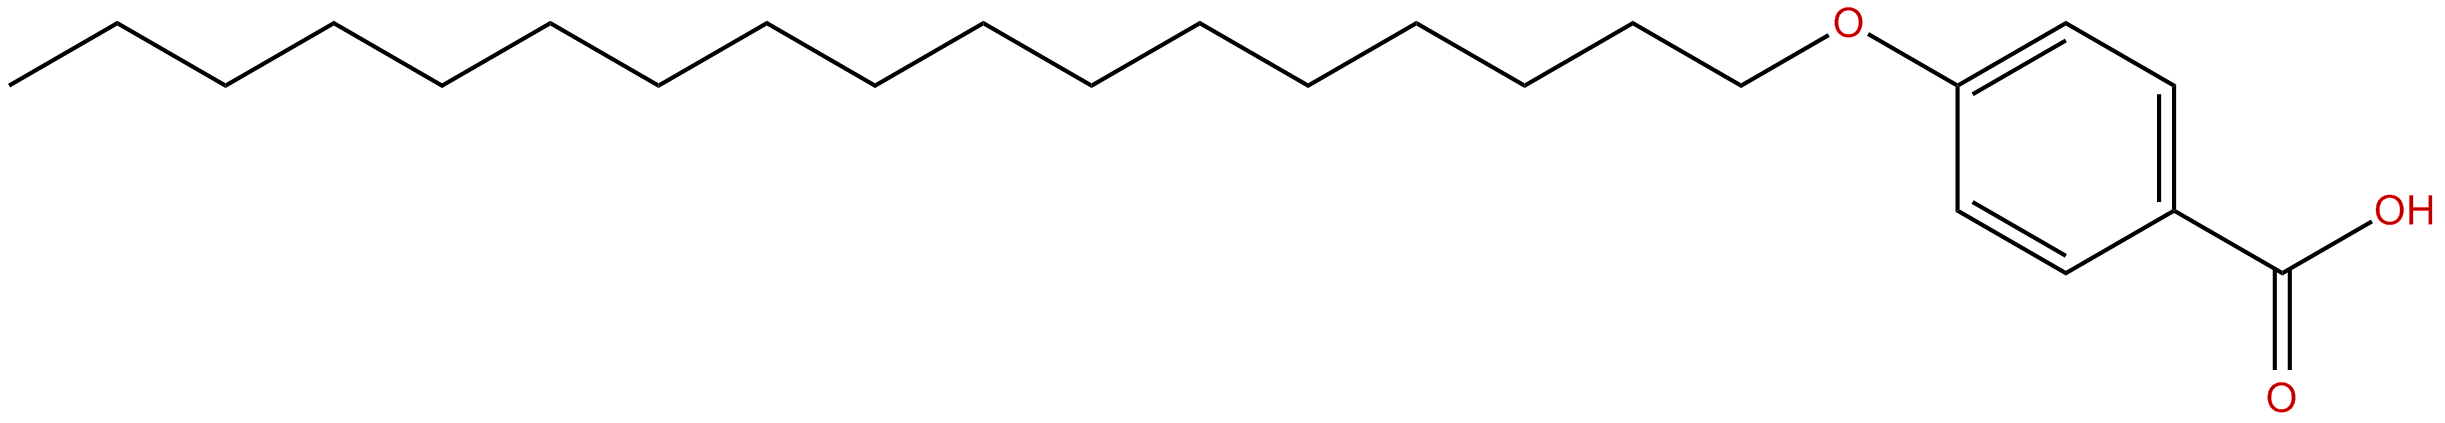 Image of 4-heptadecyloxybenzoic acid